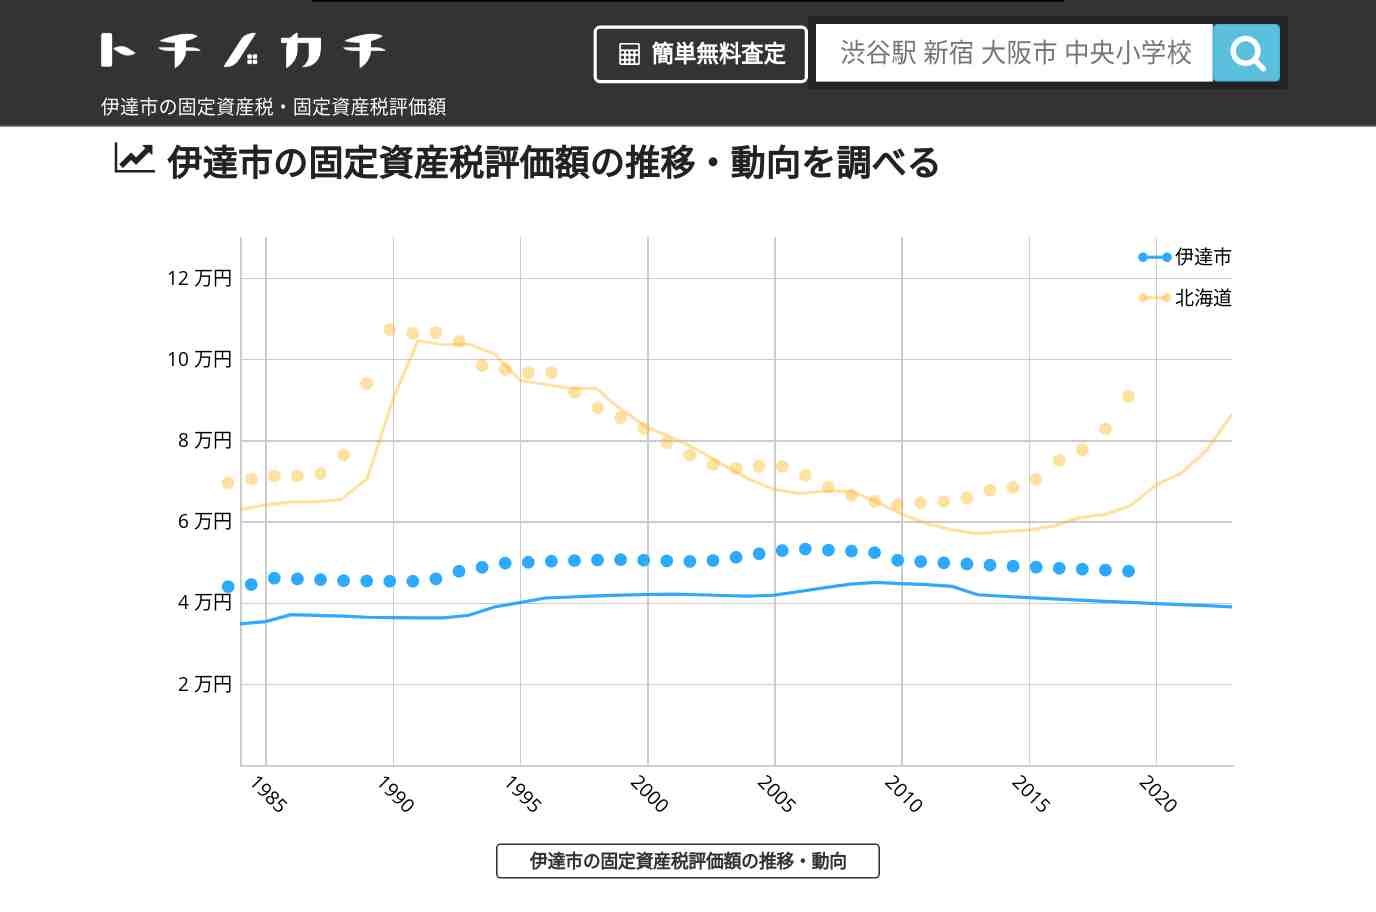 大滝中学校(北海道 伊達市)周辺の固定資産税・固定資産税評価額 | トチノカチ